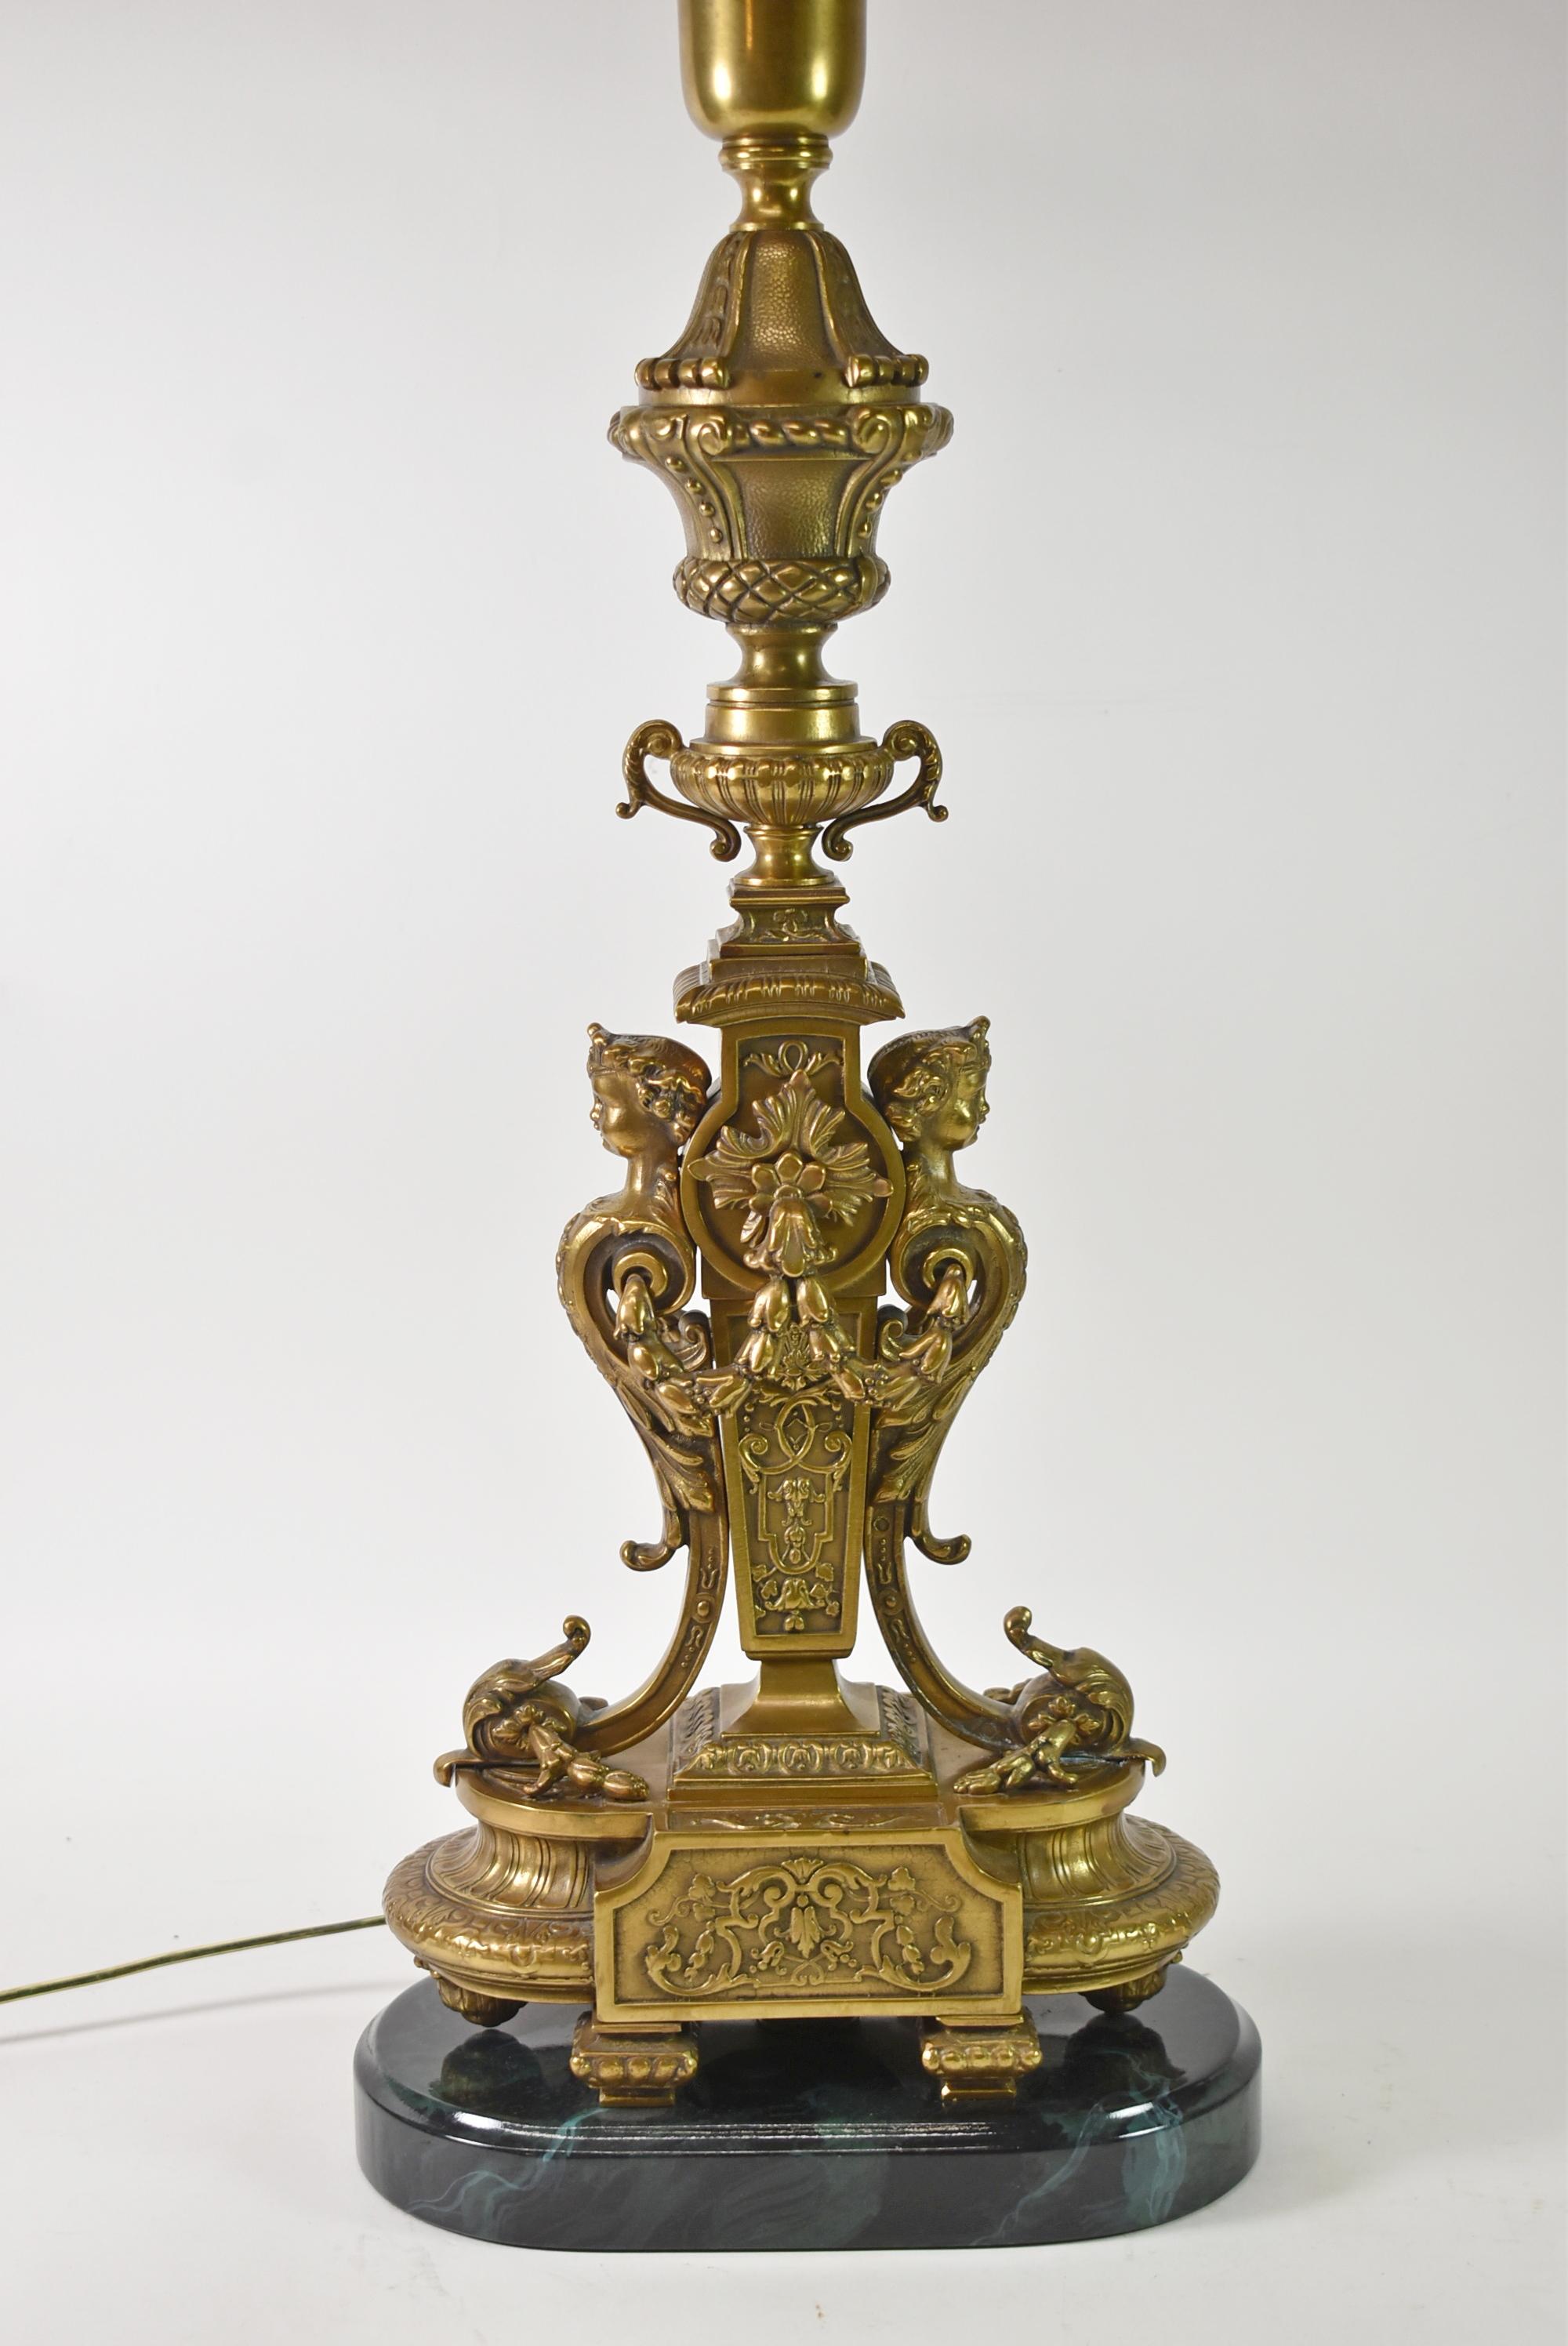 Cette belle lampe de table de la Renaissance italienne a une forme d'urne avec des poignées doubles. Le corps de la lampe est décoré de têtes de femmes avec des couronnes et des guirlandes en forme de feuilles. Le câblage a été refait avec des